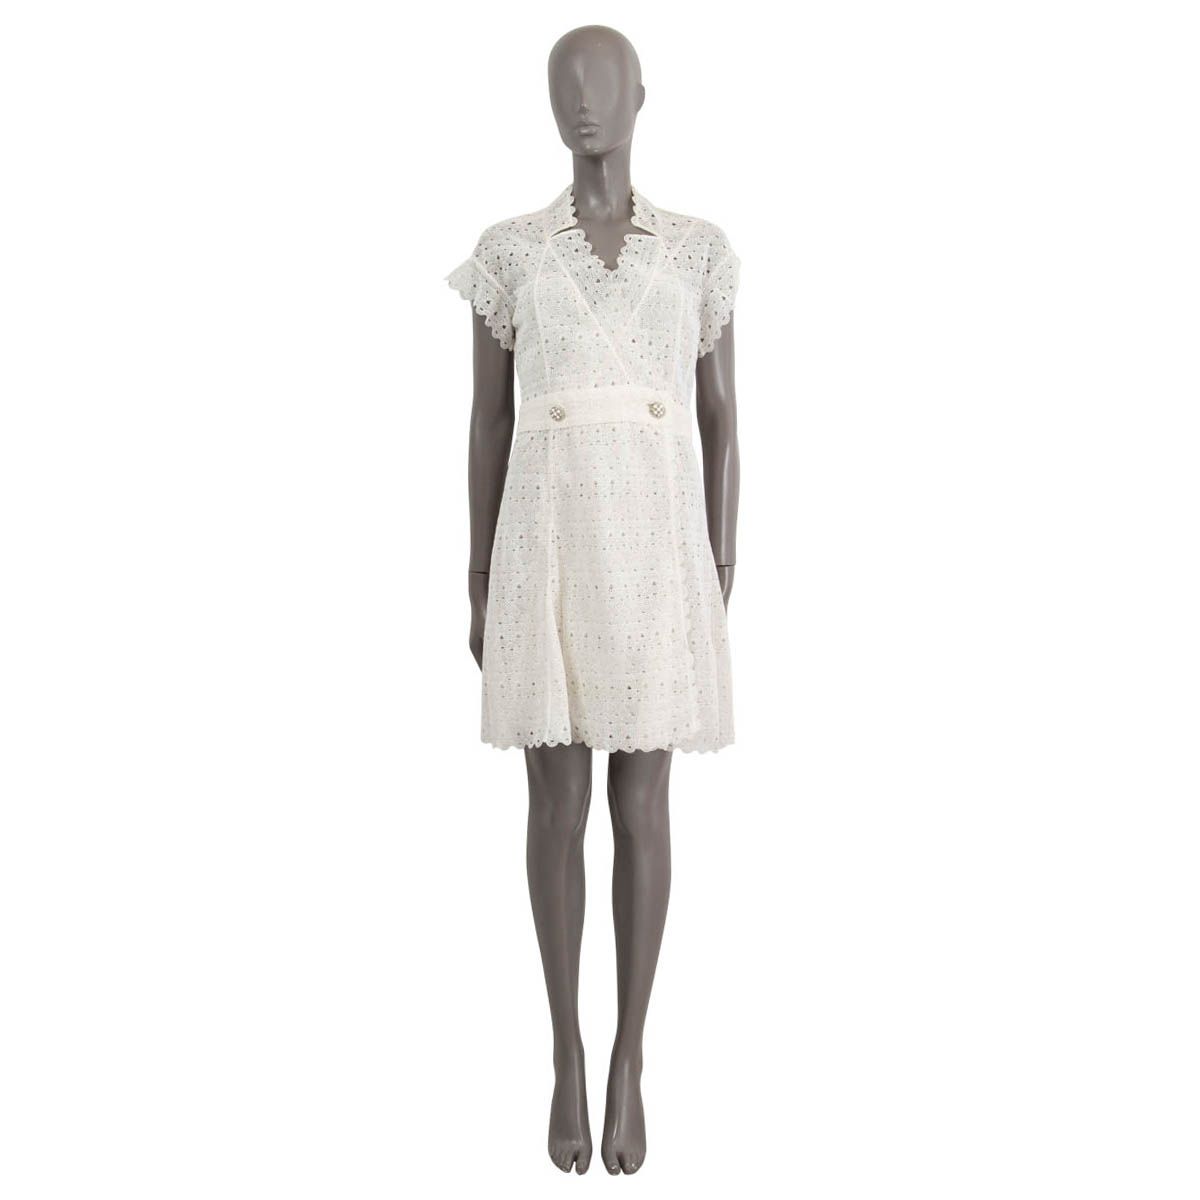 Chanel Summer 2015 Crochet Dress White